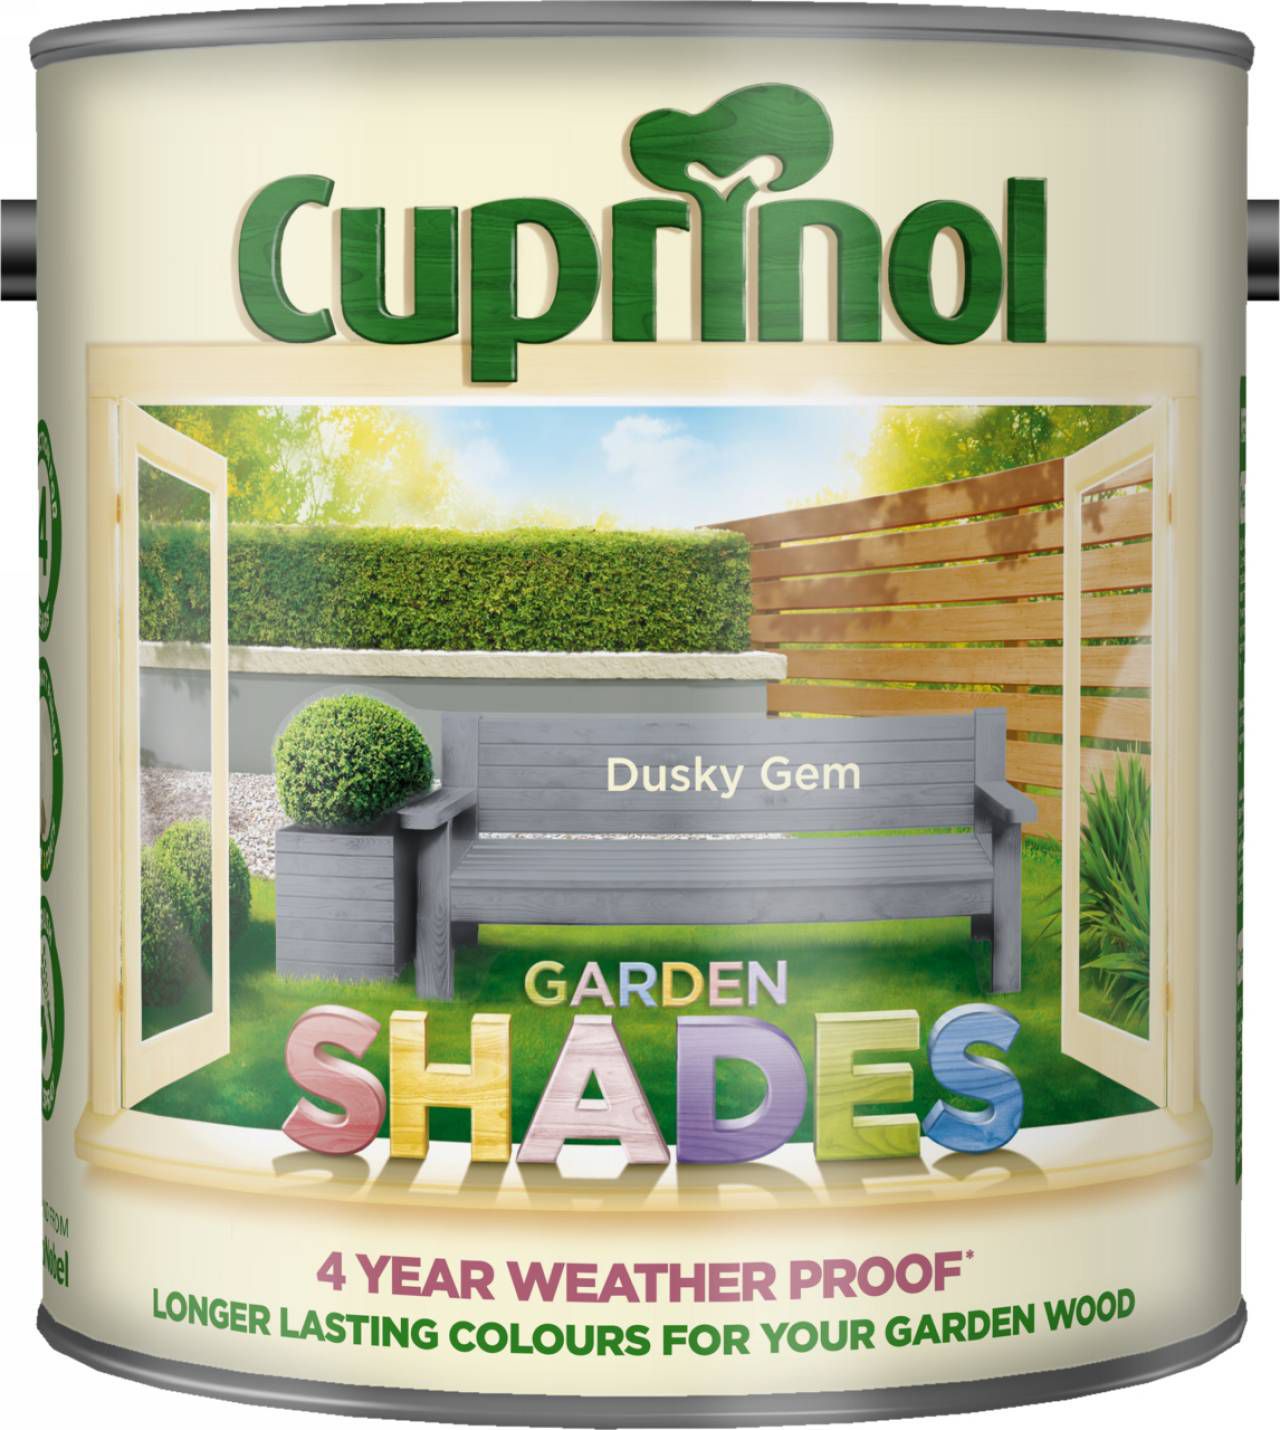 Cuprinol Garden shades Dusky gem Matt Multi-surface Exterior Wood paint, 2.5L